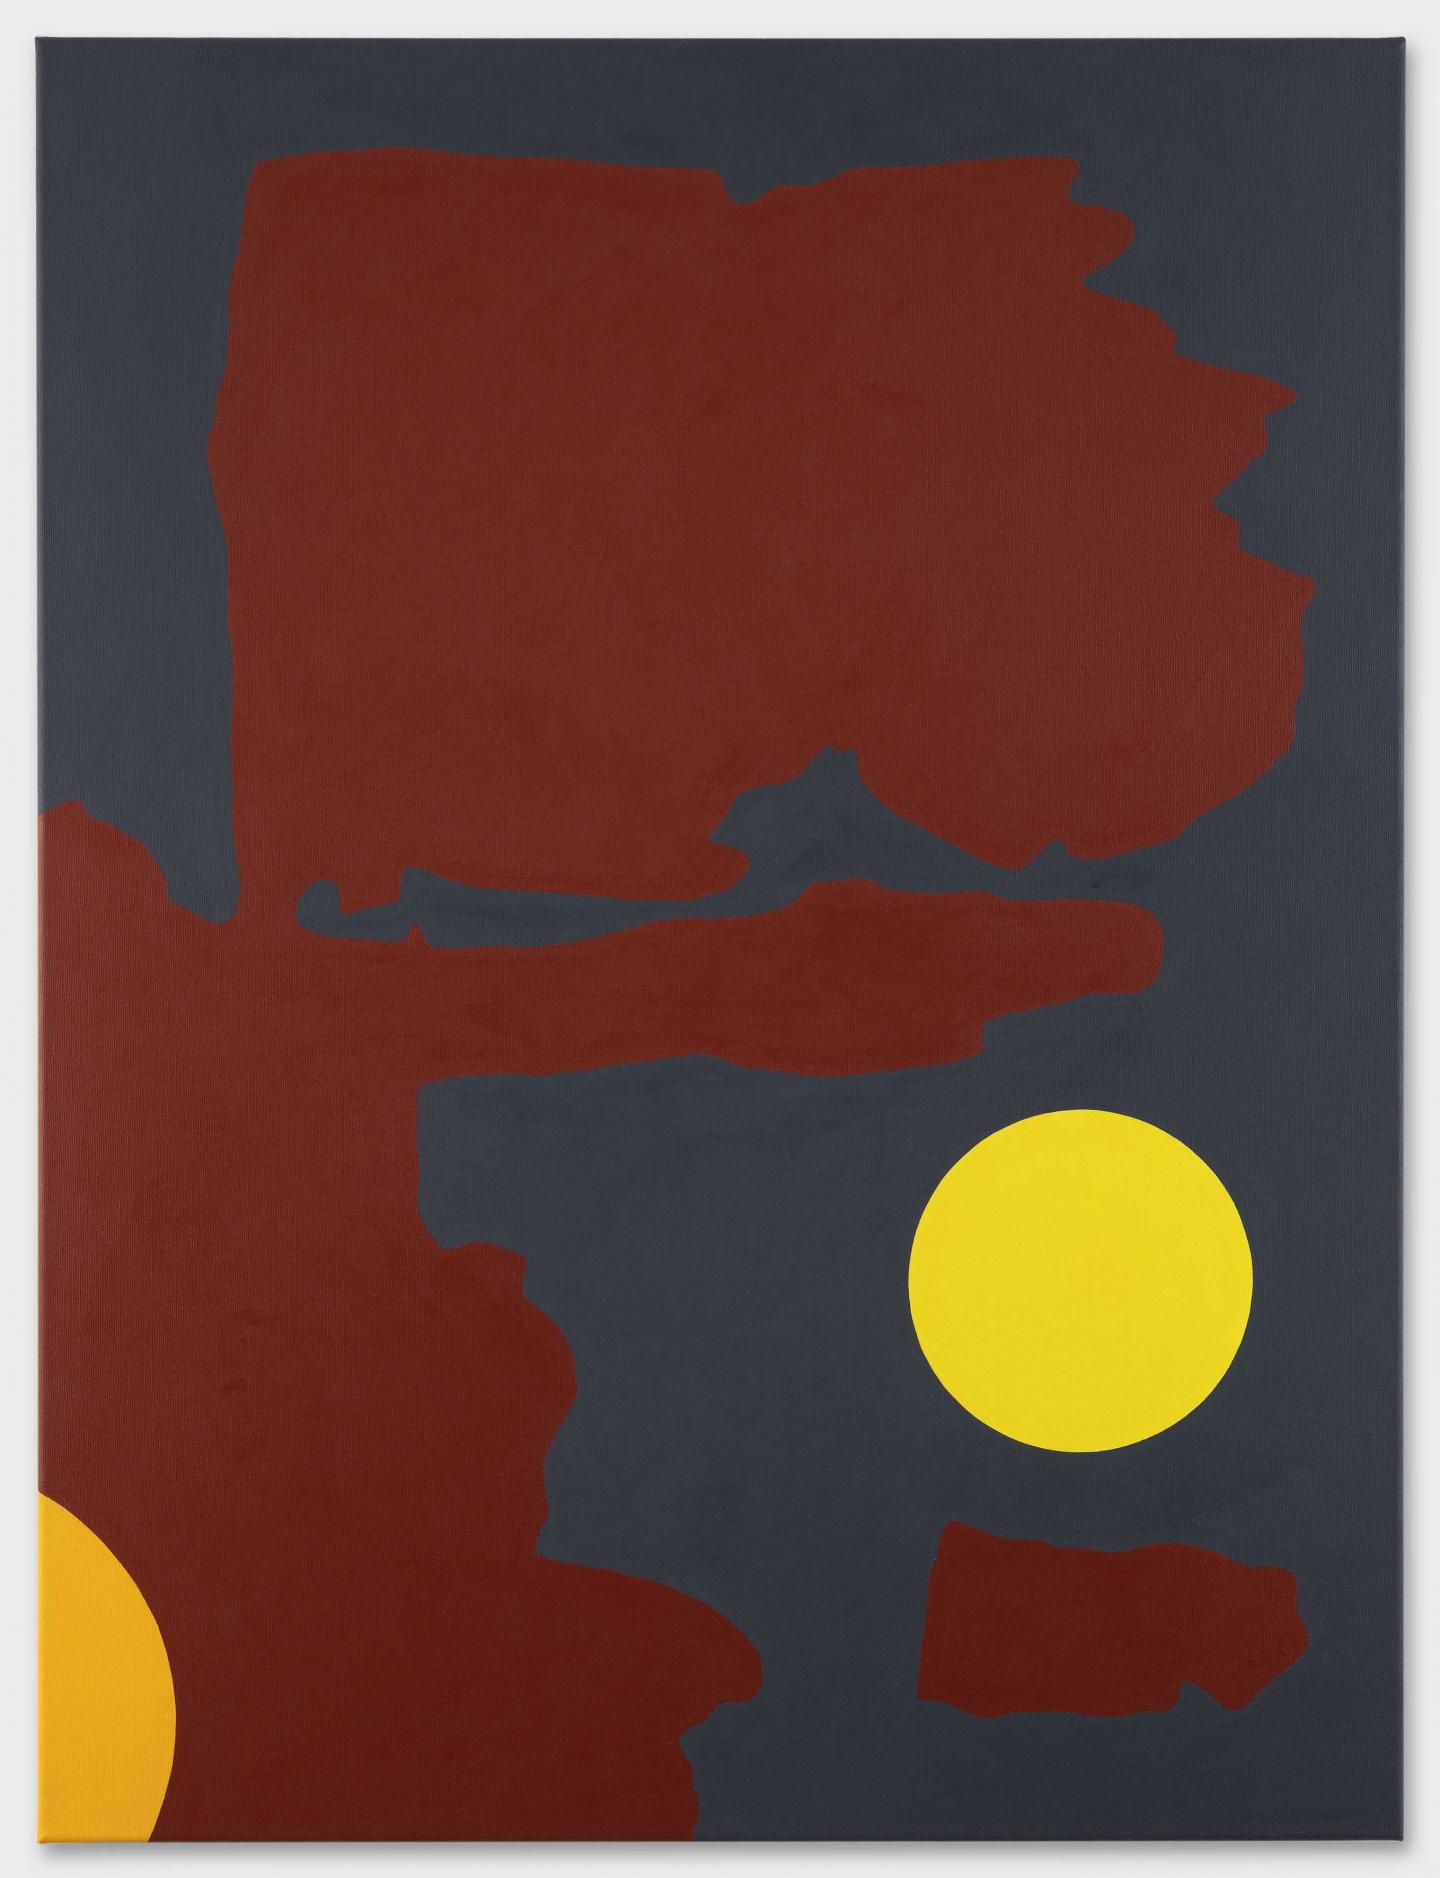 Jean-Luc Manz, Une promenade de ce côté no 22, 2020, acrylic on canvas, 68 x 80 cm